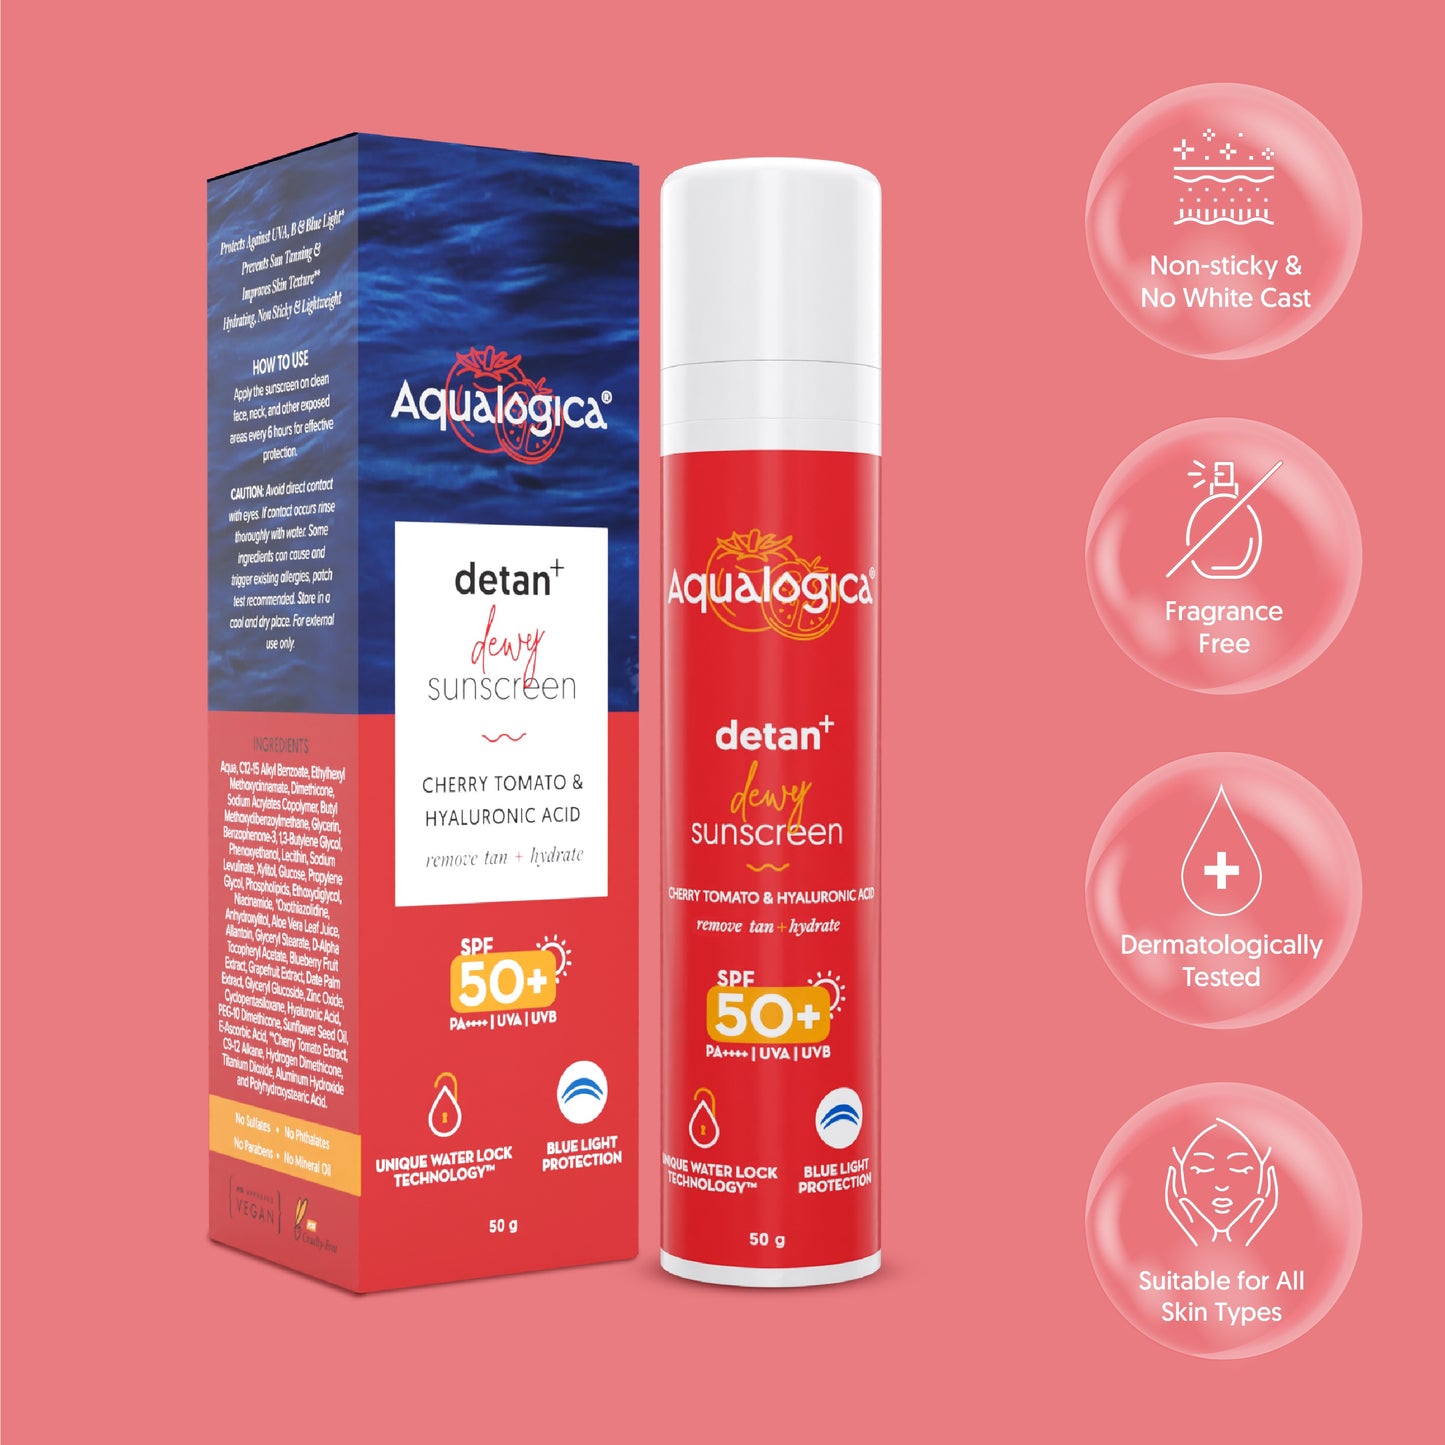 Detan+ Dewy Sunscreen - 50g - Pack of 2